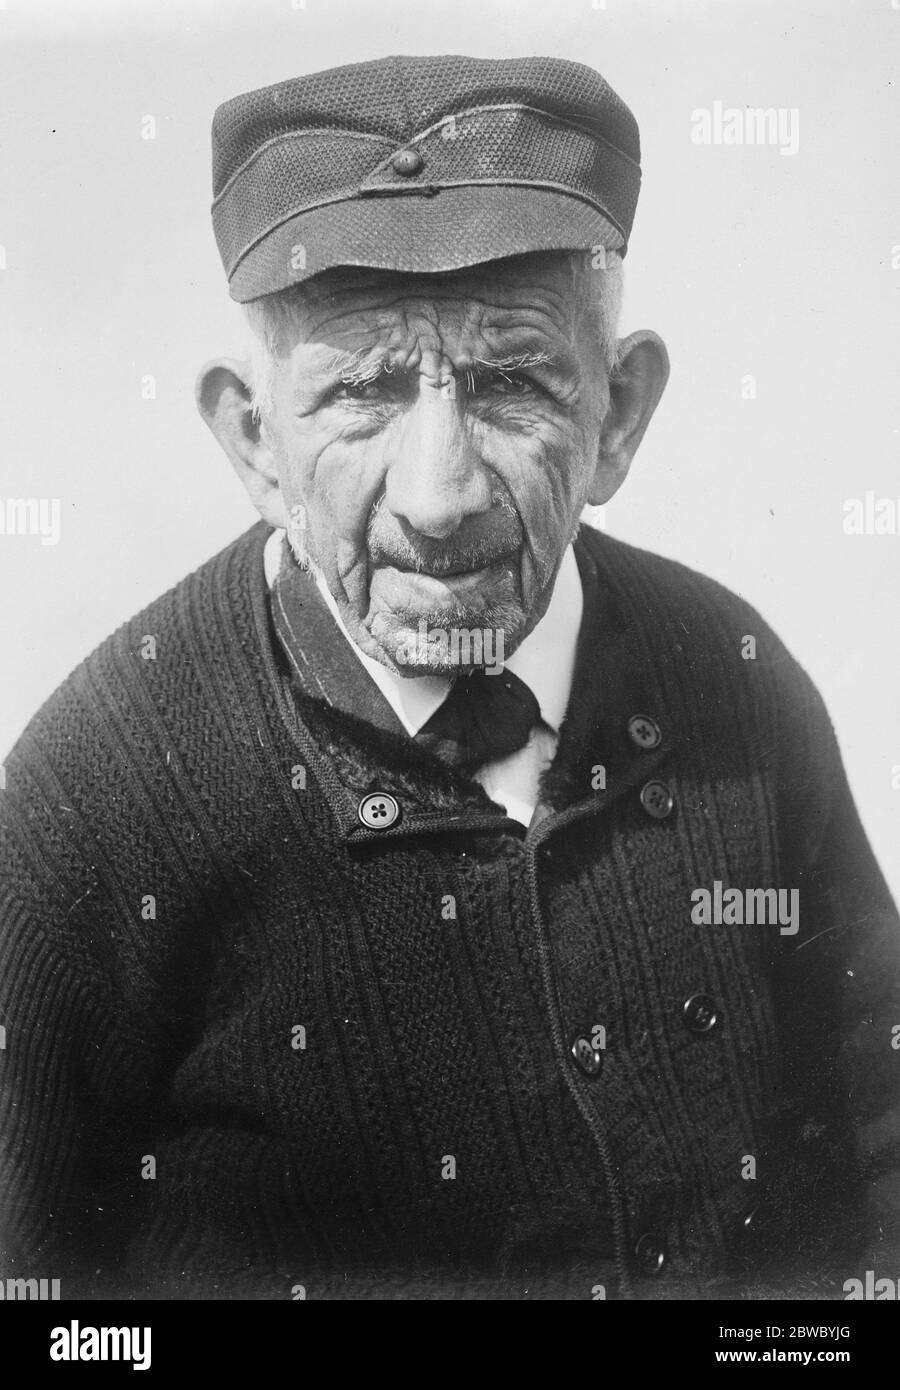 105 am Chrsitmas Tag . Louis Archambault , der älteste Mann in Frankreich , der in einem Dorf in der Nähe von Bordeaux geboren wurde Dezember 25 1821 14 Dezember 1926 Stockfoto